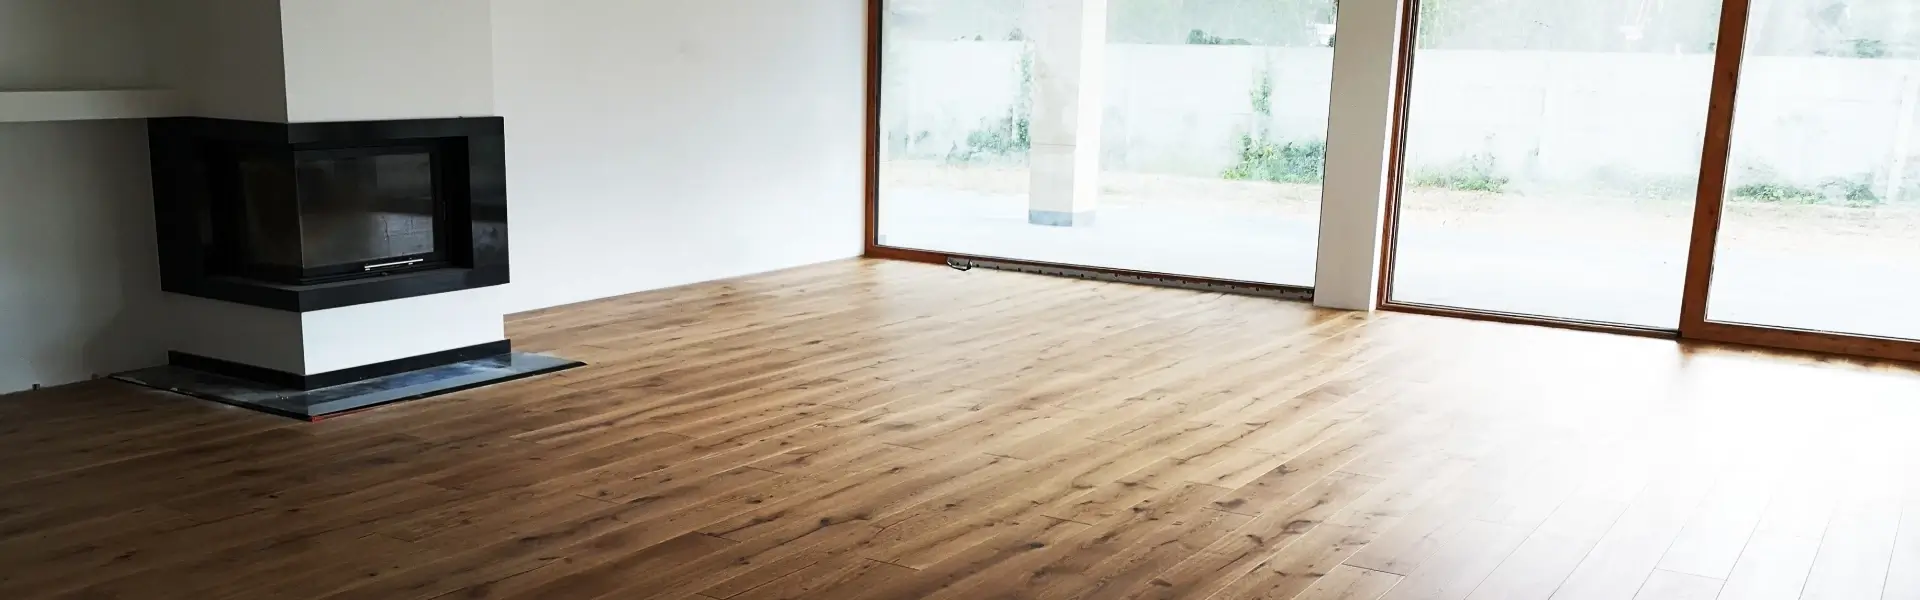 drewniana podłoga w salonie z kominkiem